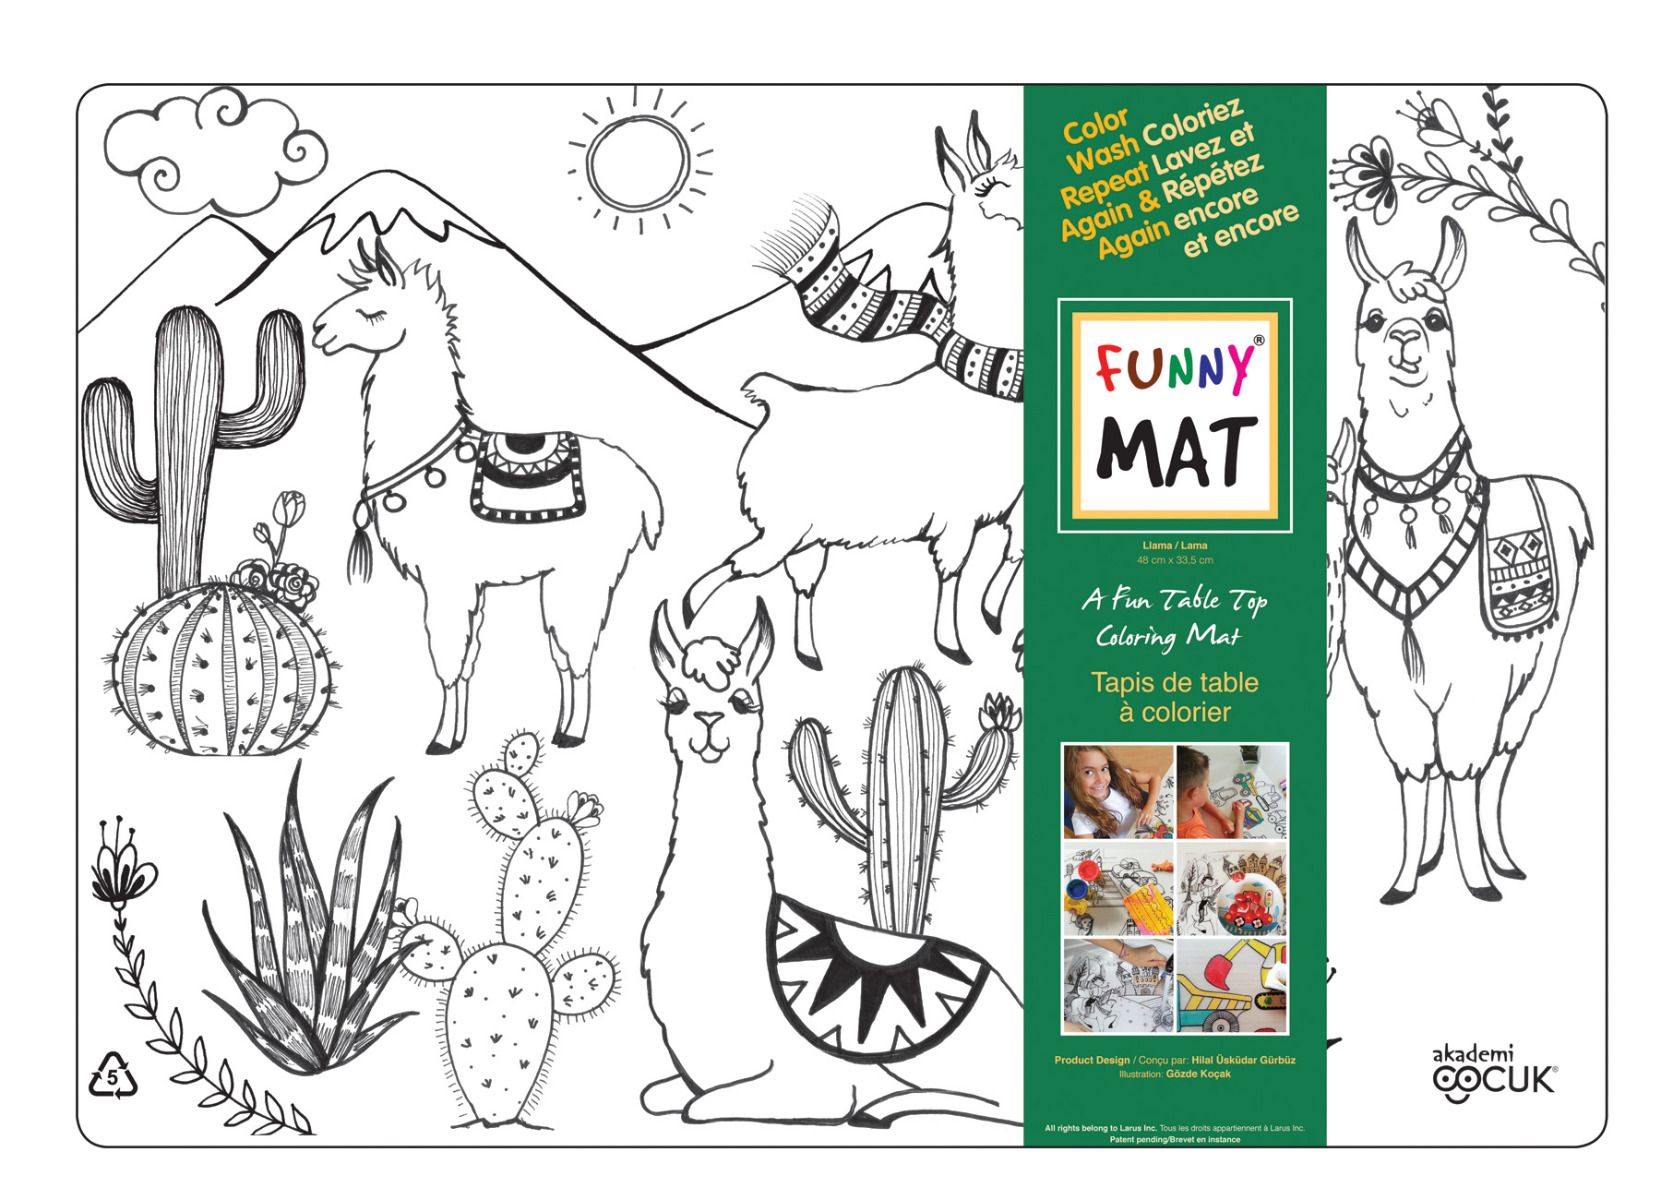 Funny MAT A Fun Table Top Coloring Mats - LAMA(Transparent, Single)